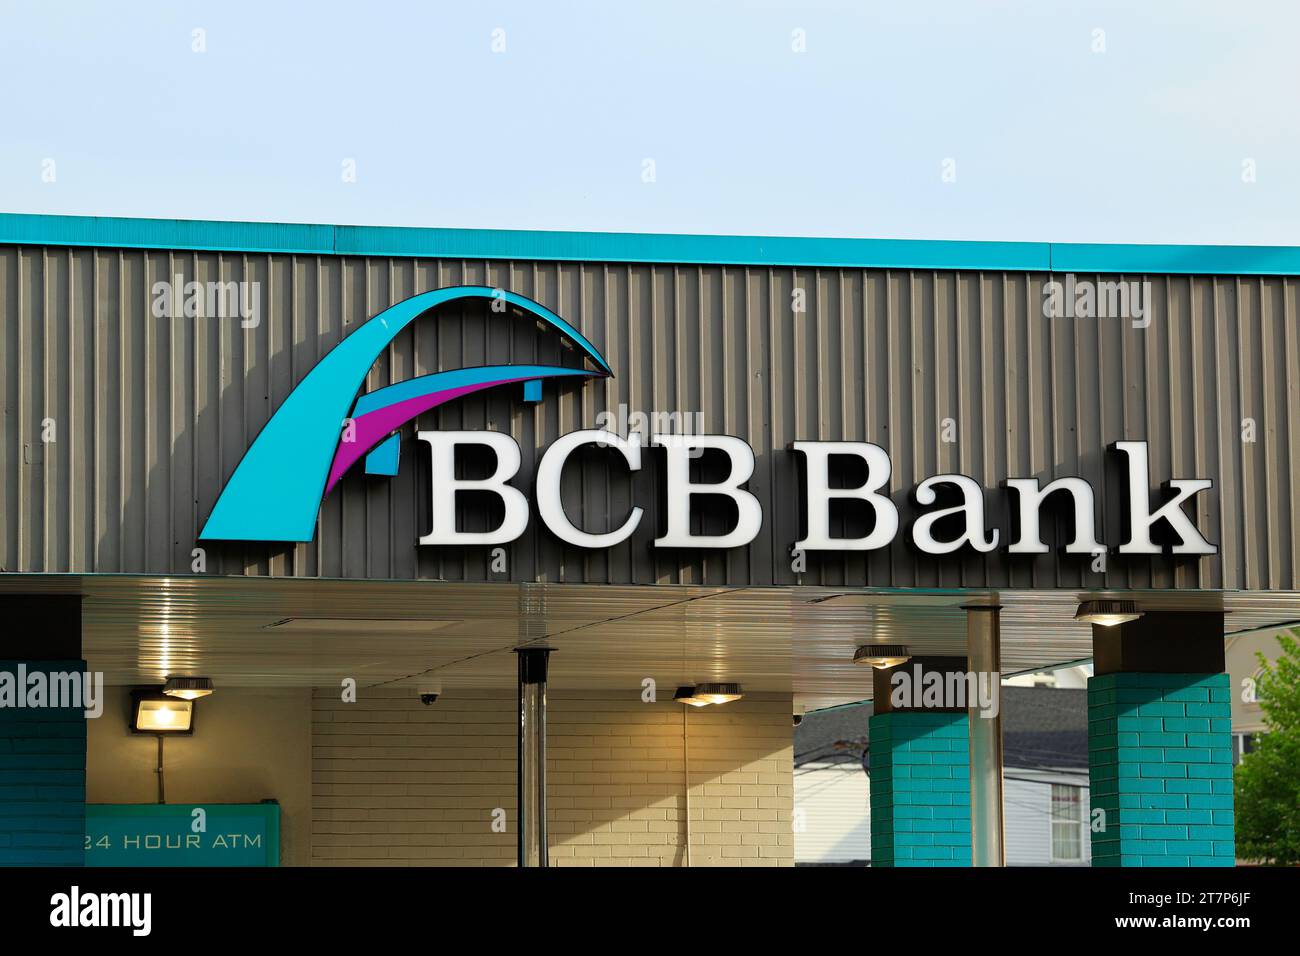 Beschilderung für die BCB Bank, Bayonne Community Bank, in einer Filiale in Newark, New Jersey. Stockfoto